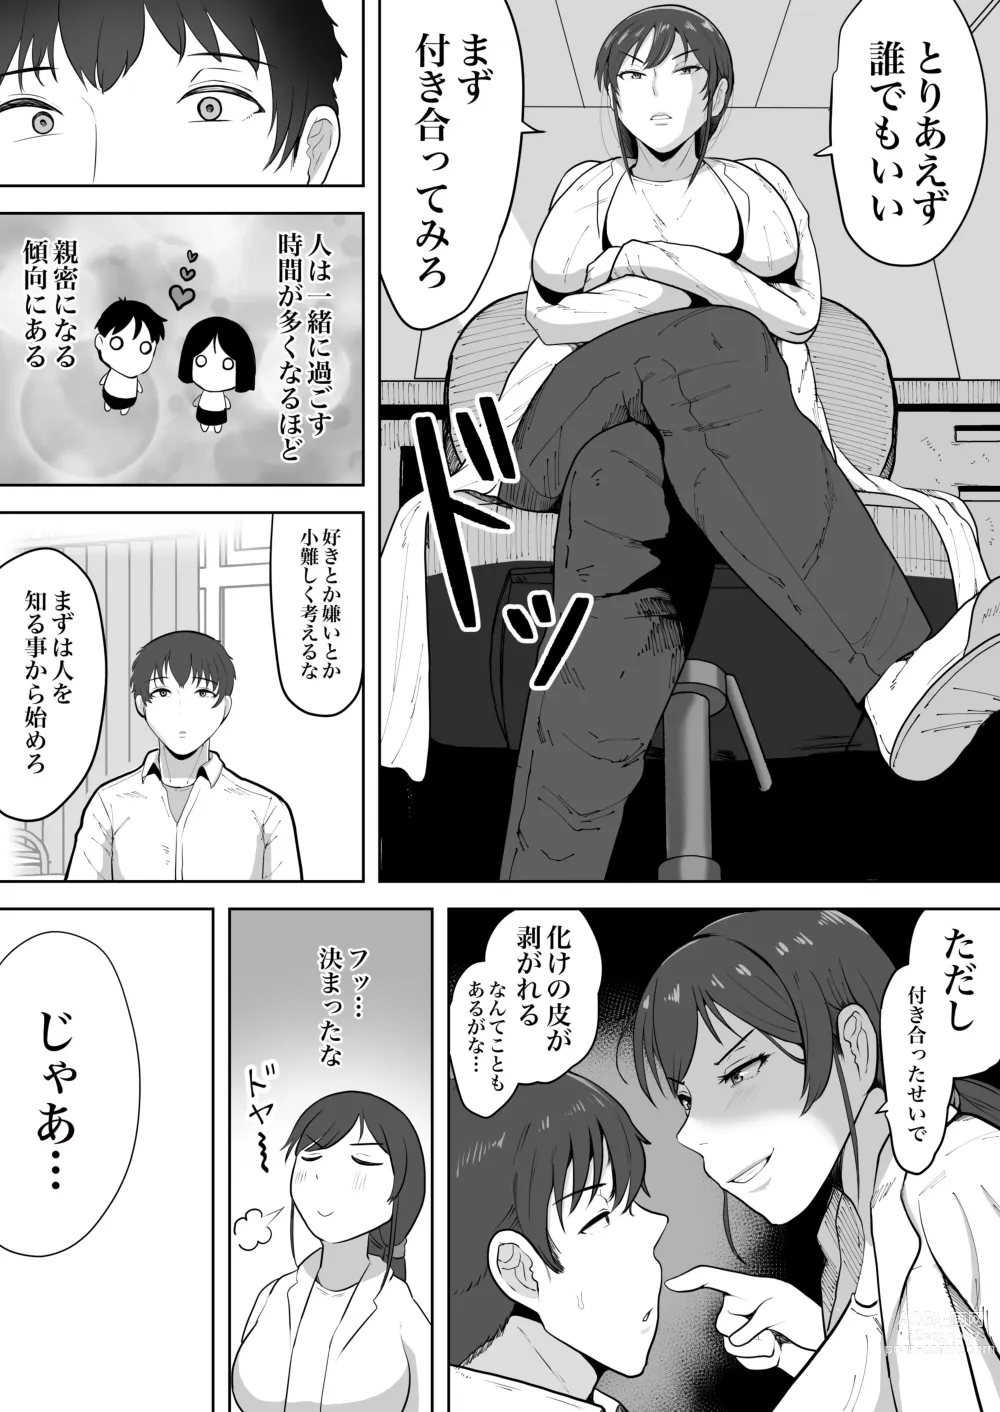 Page 6 of doujinshi Hoken no Sensei Shinobu 37-sai